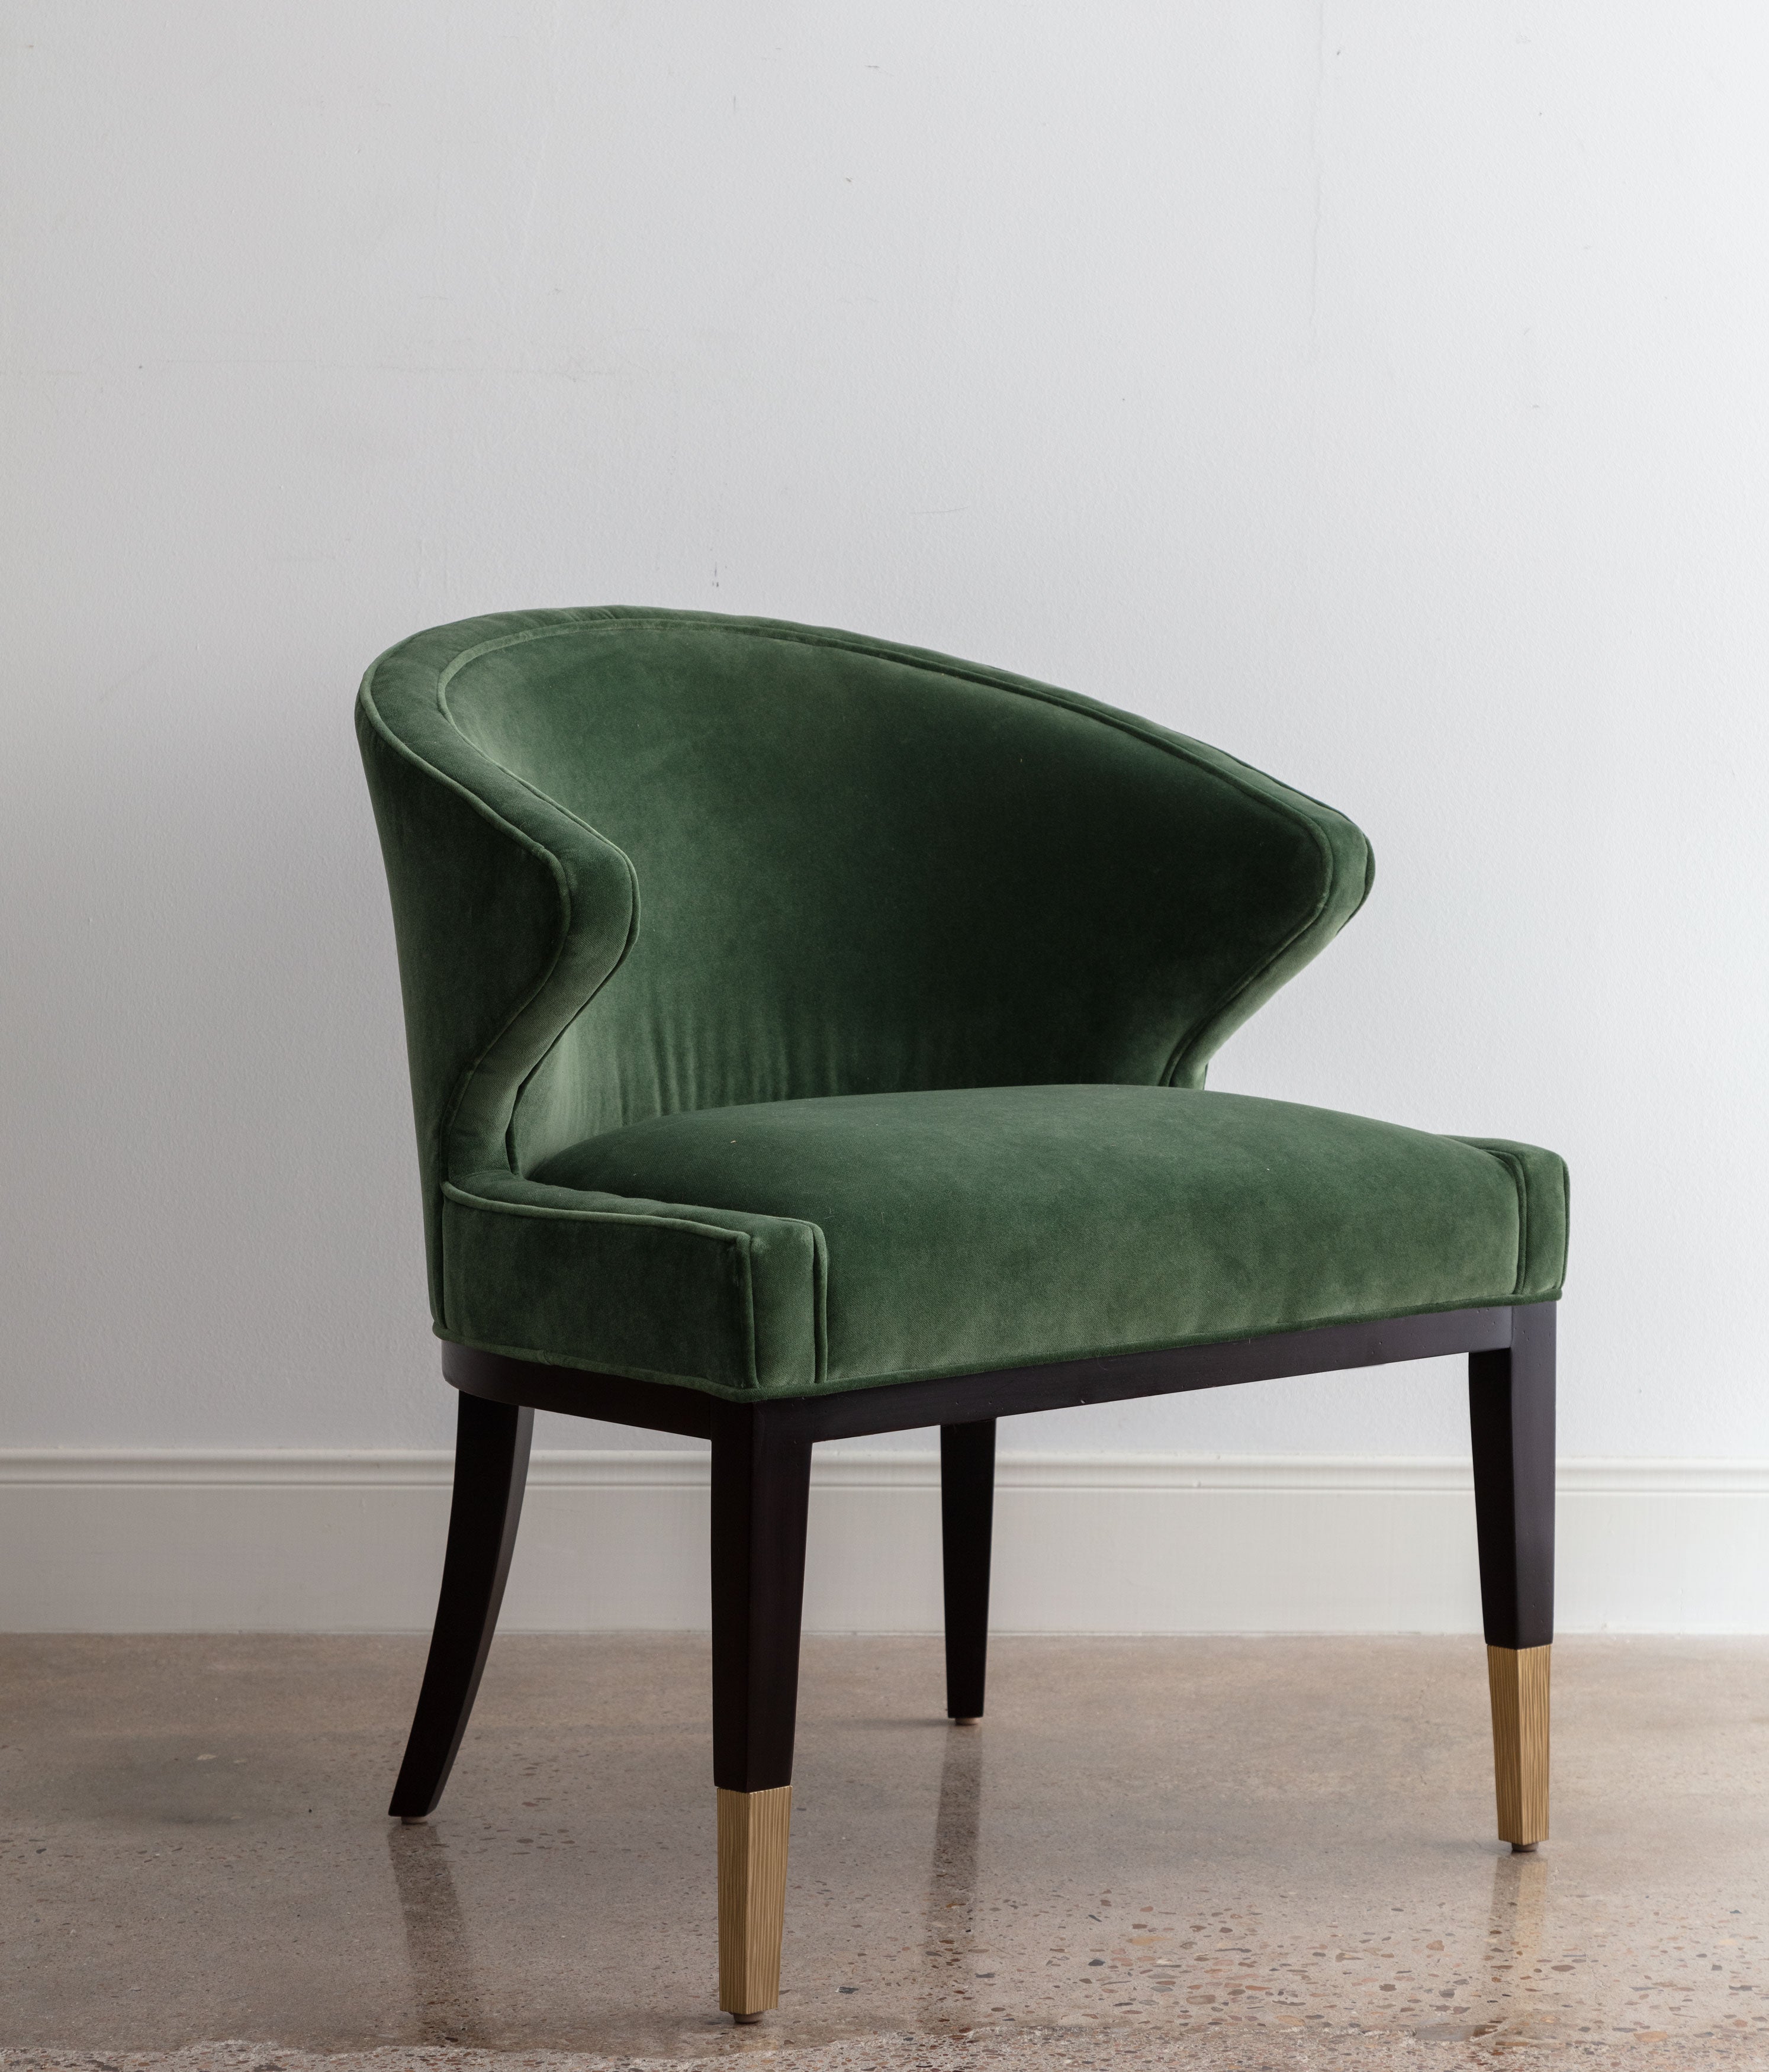 angled view of green velvet chair